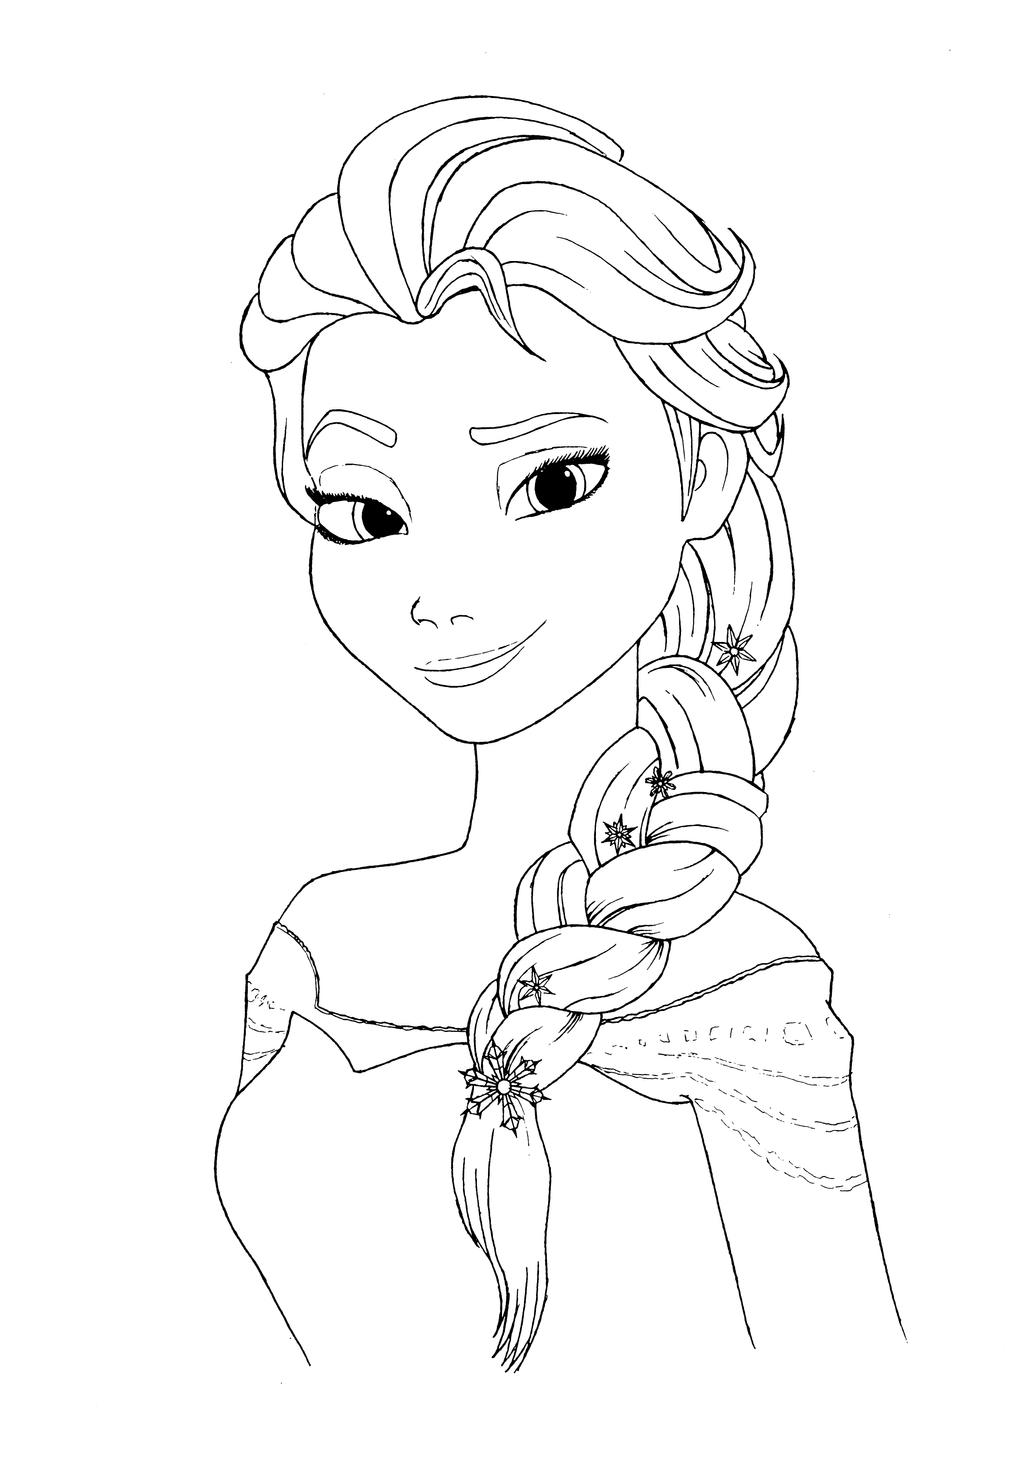 Elsa coloring page by Mortusk on DeviantArt